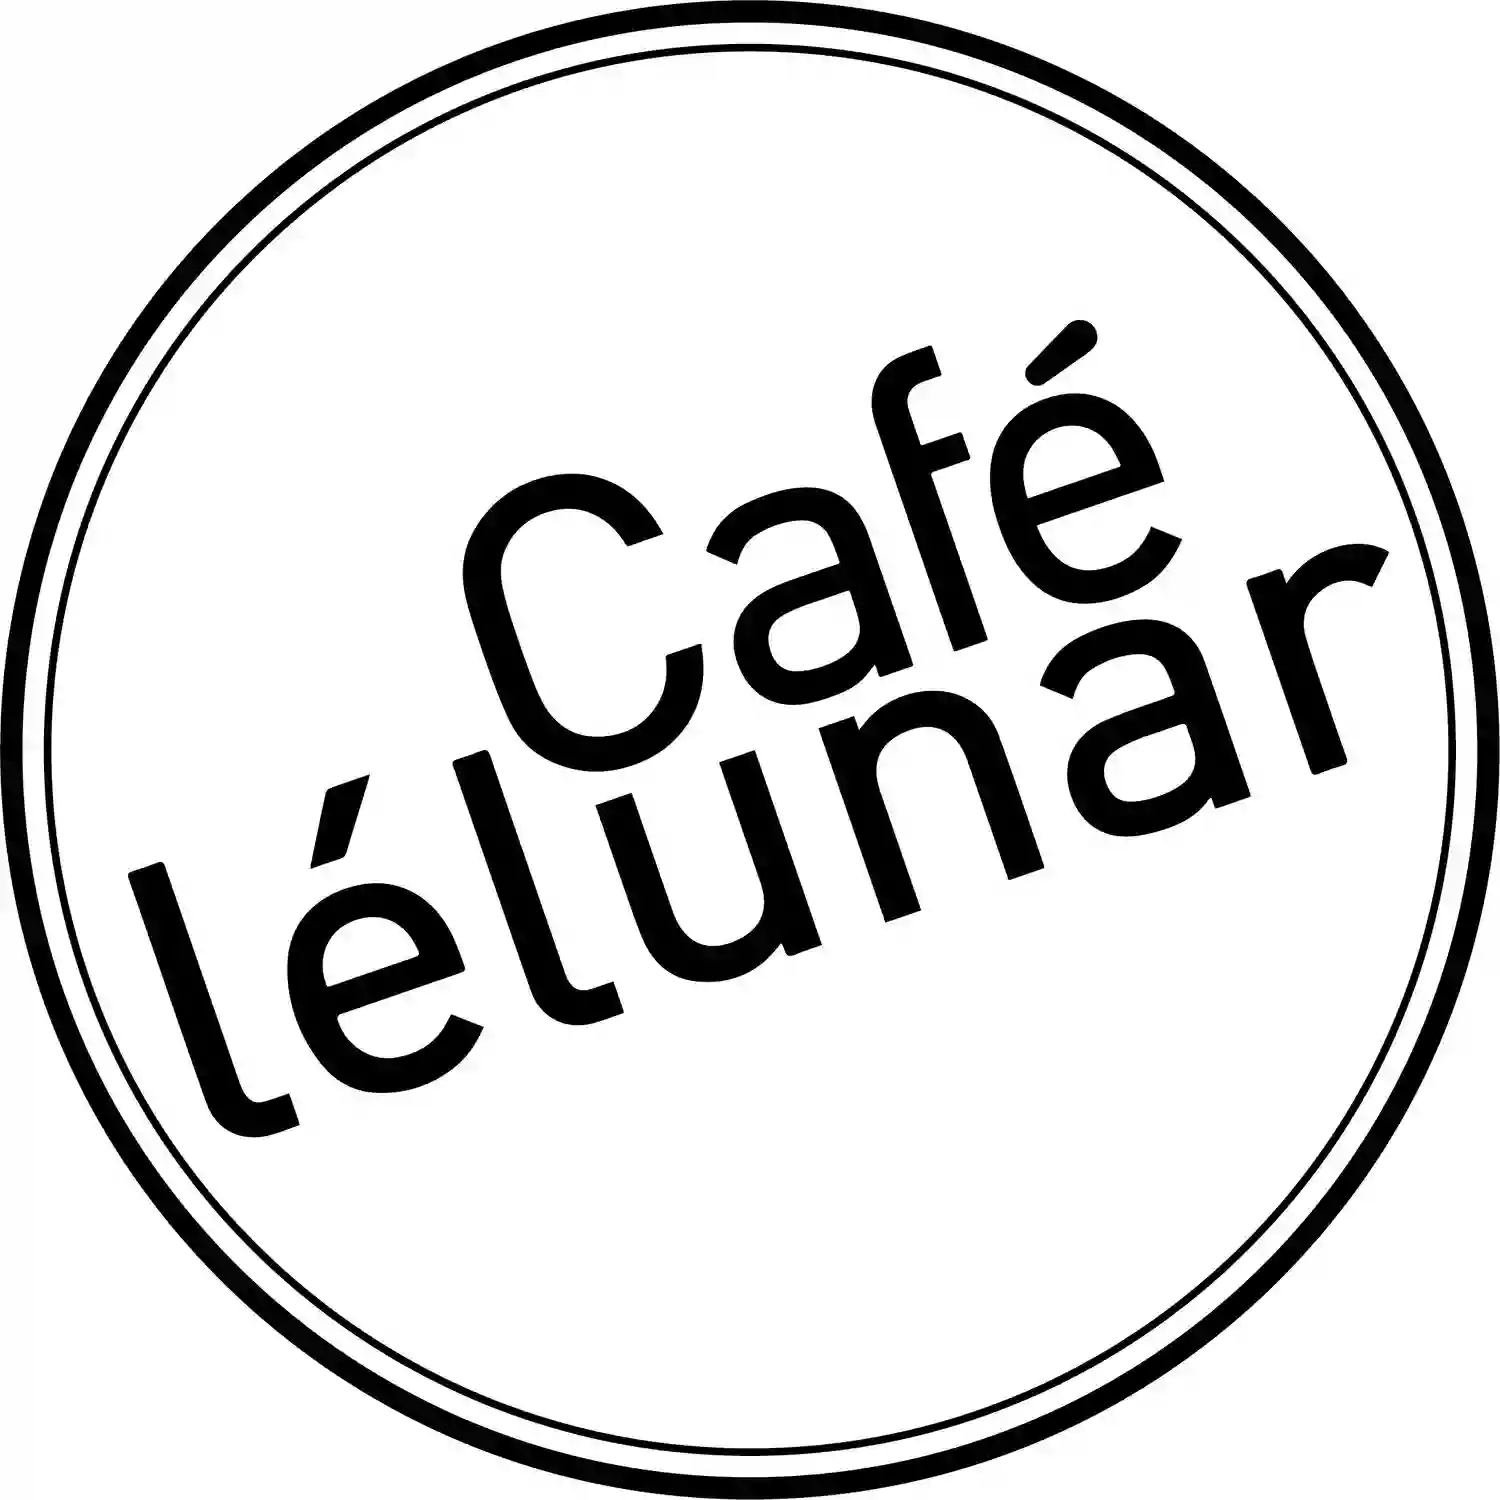 Cafe Lelunar